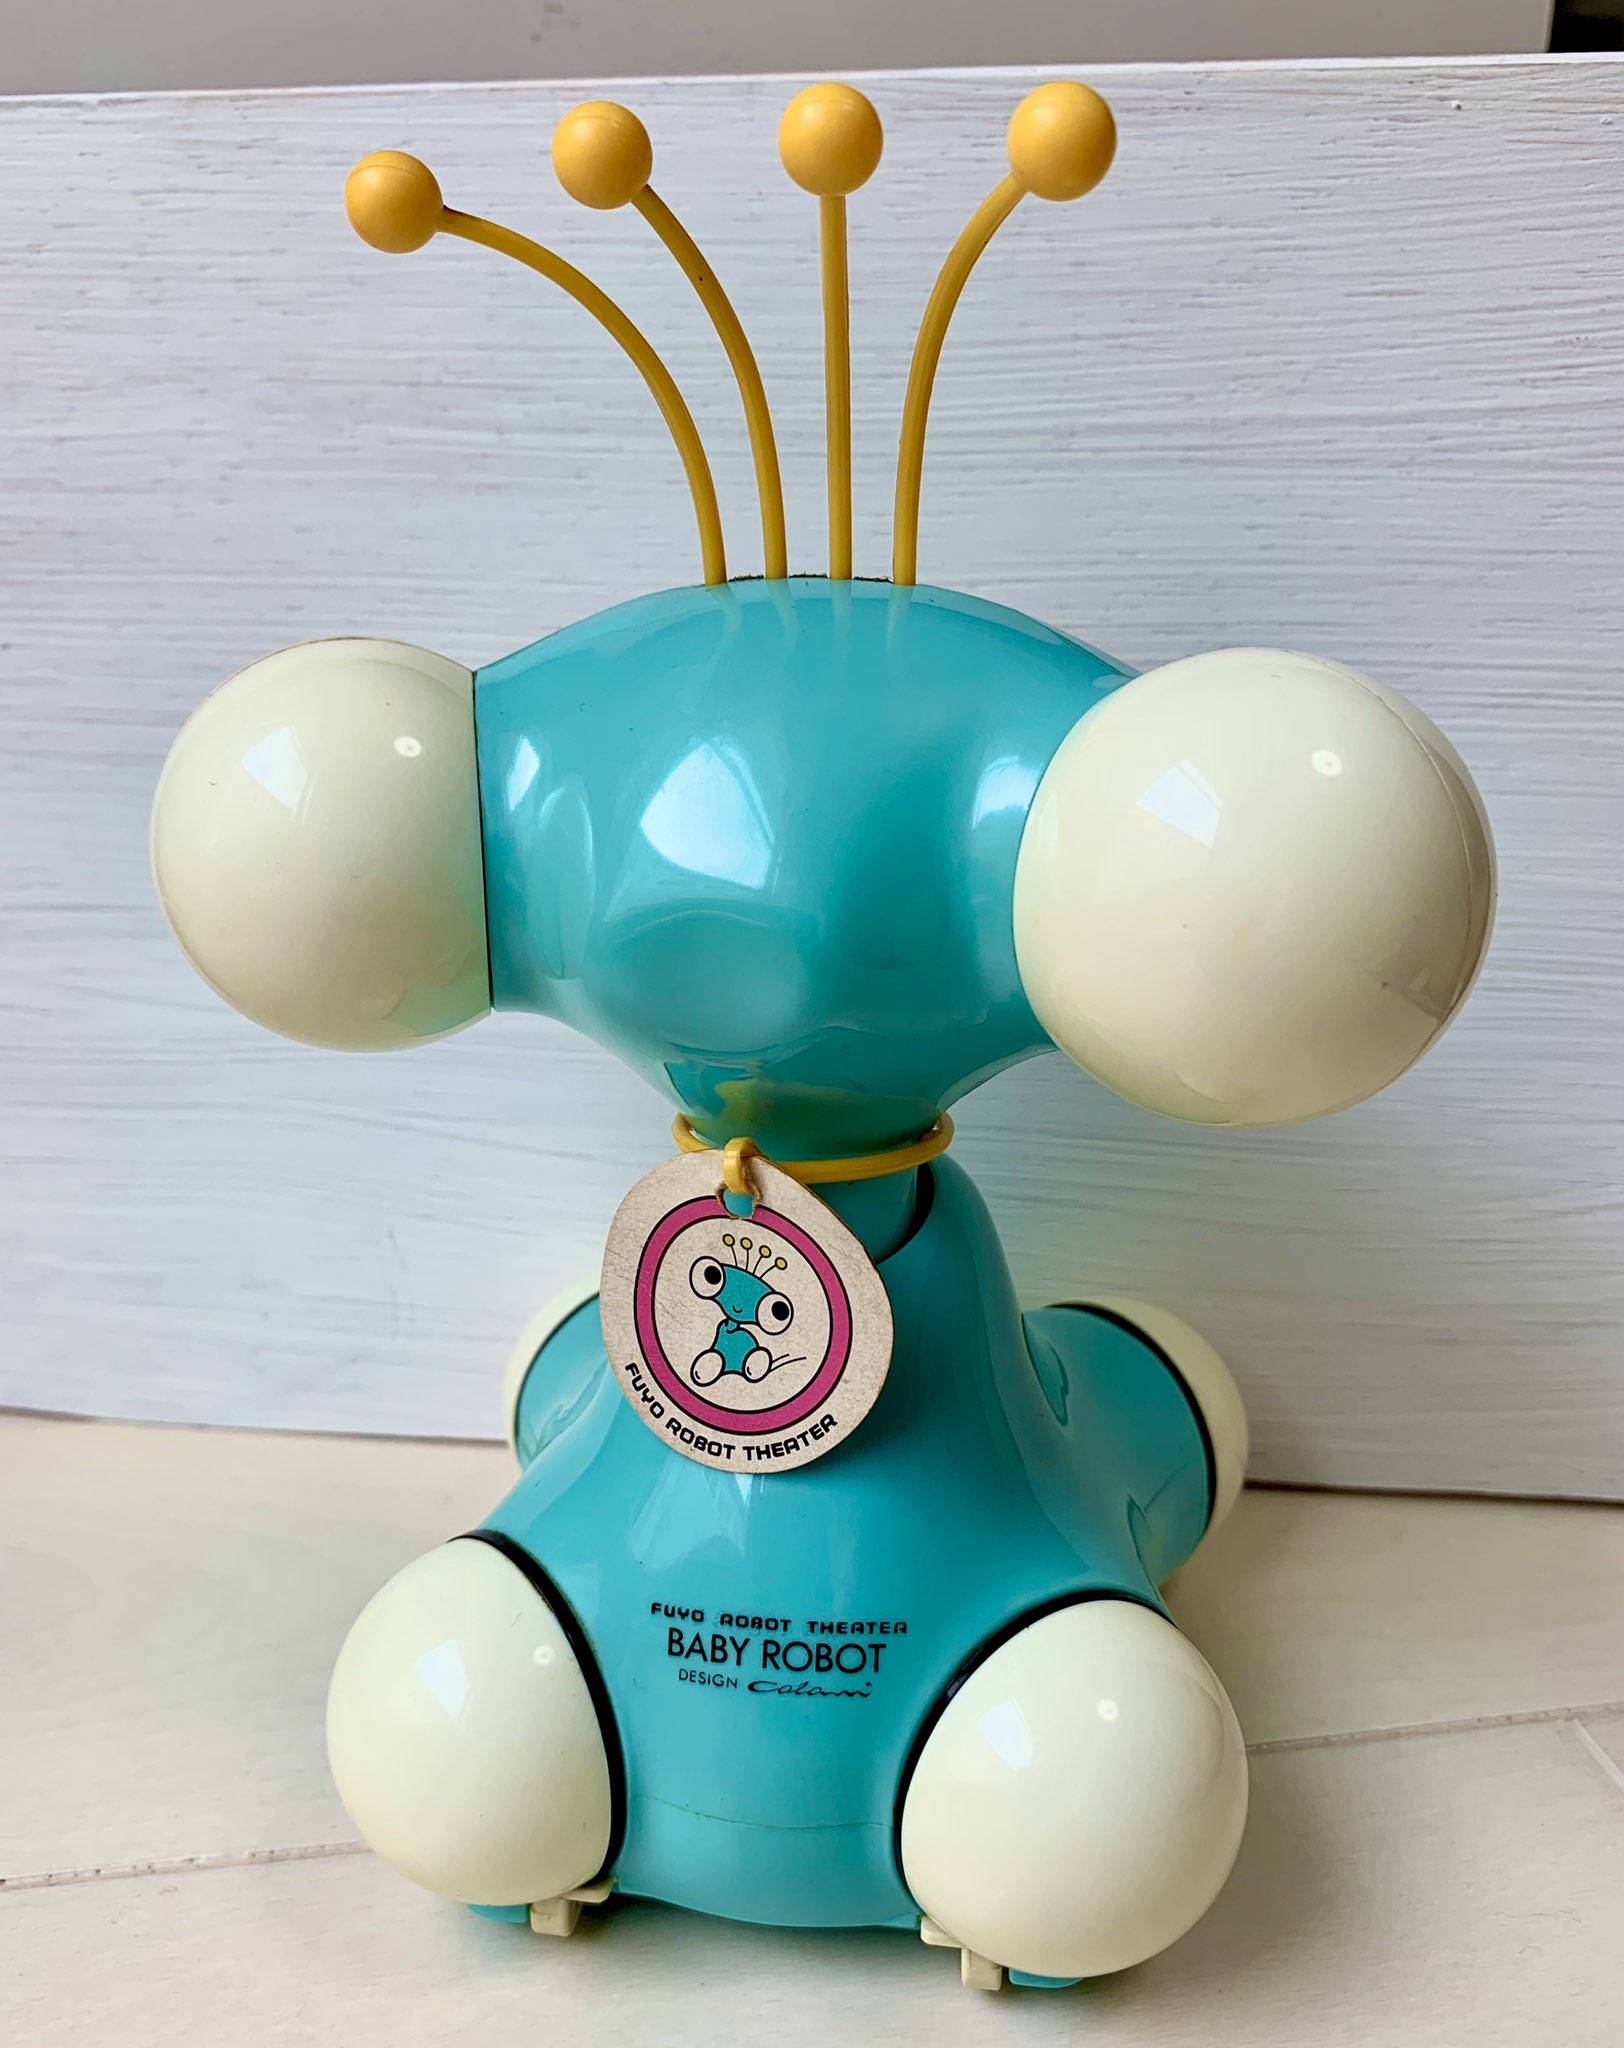 ★【レアもの】つくば万博EXPO85で活躍したベビーロボットが描かれた記念メダル